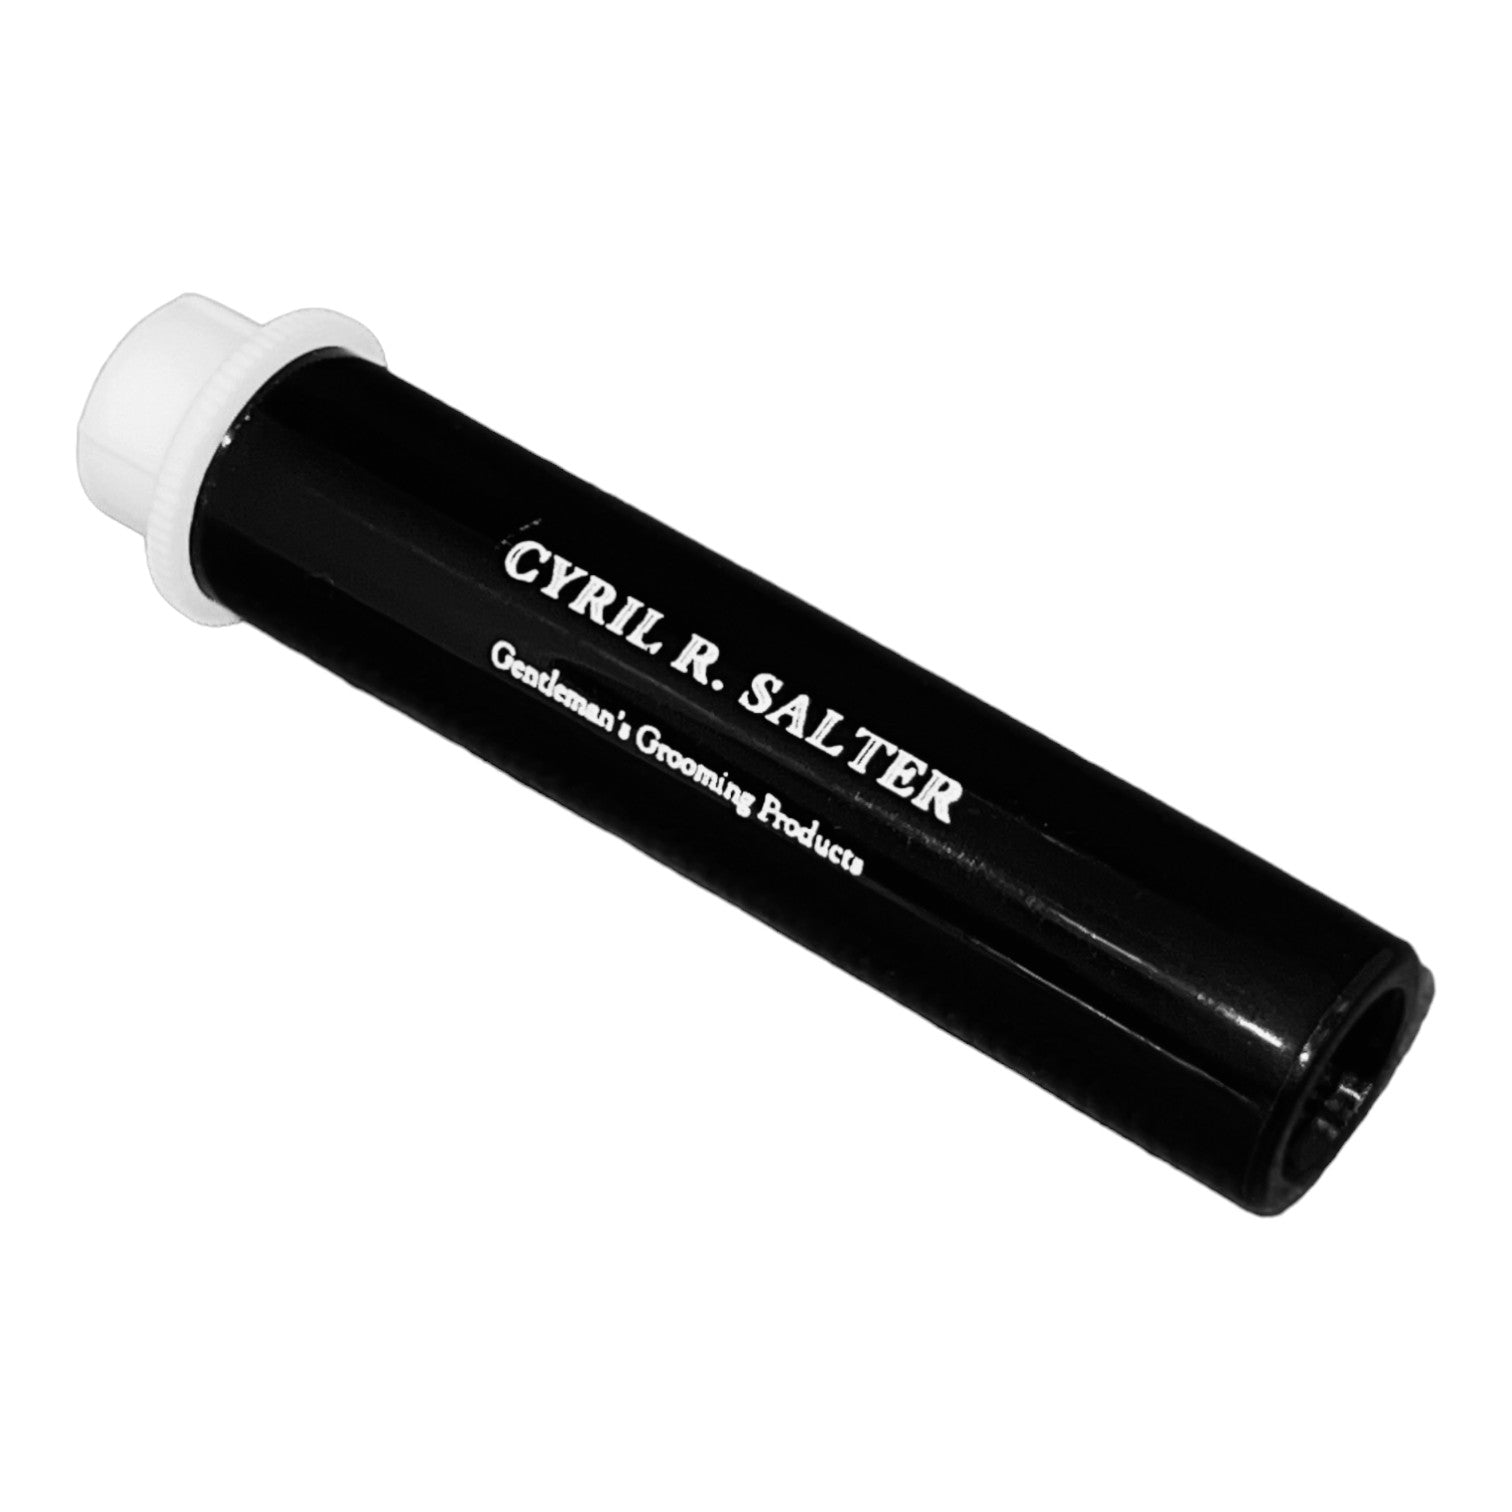 Cyril R. Salter Styptic Pencil